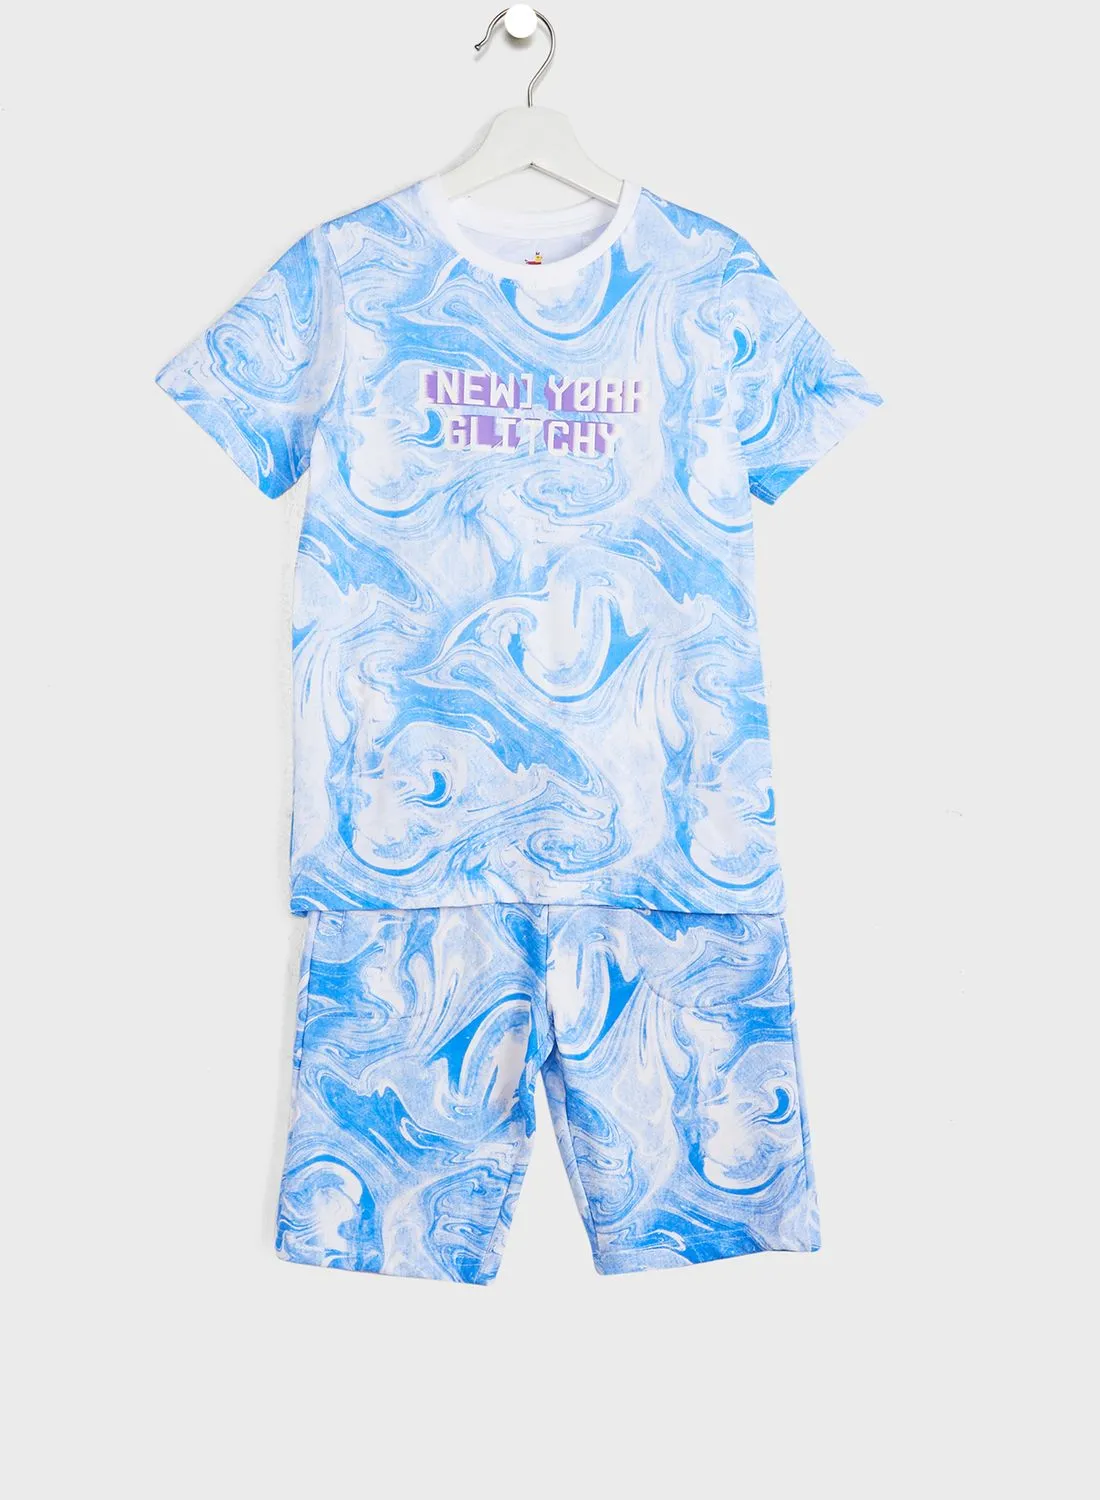 Pinata All Over Printed T-Shirts & Shorts Set For Boys